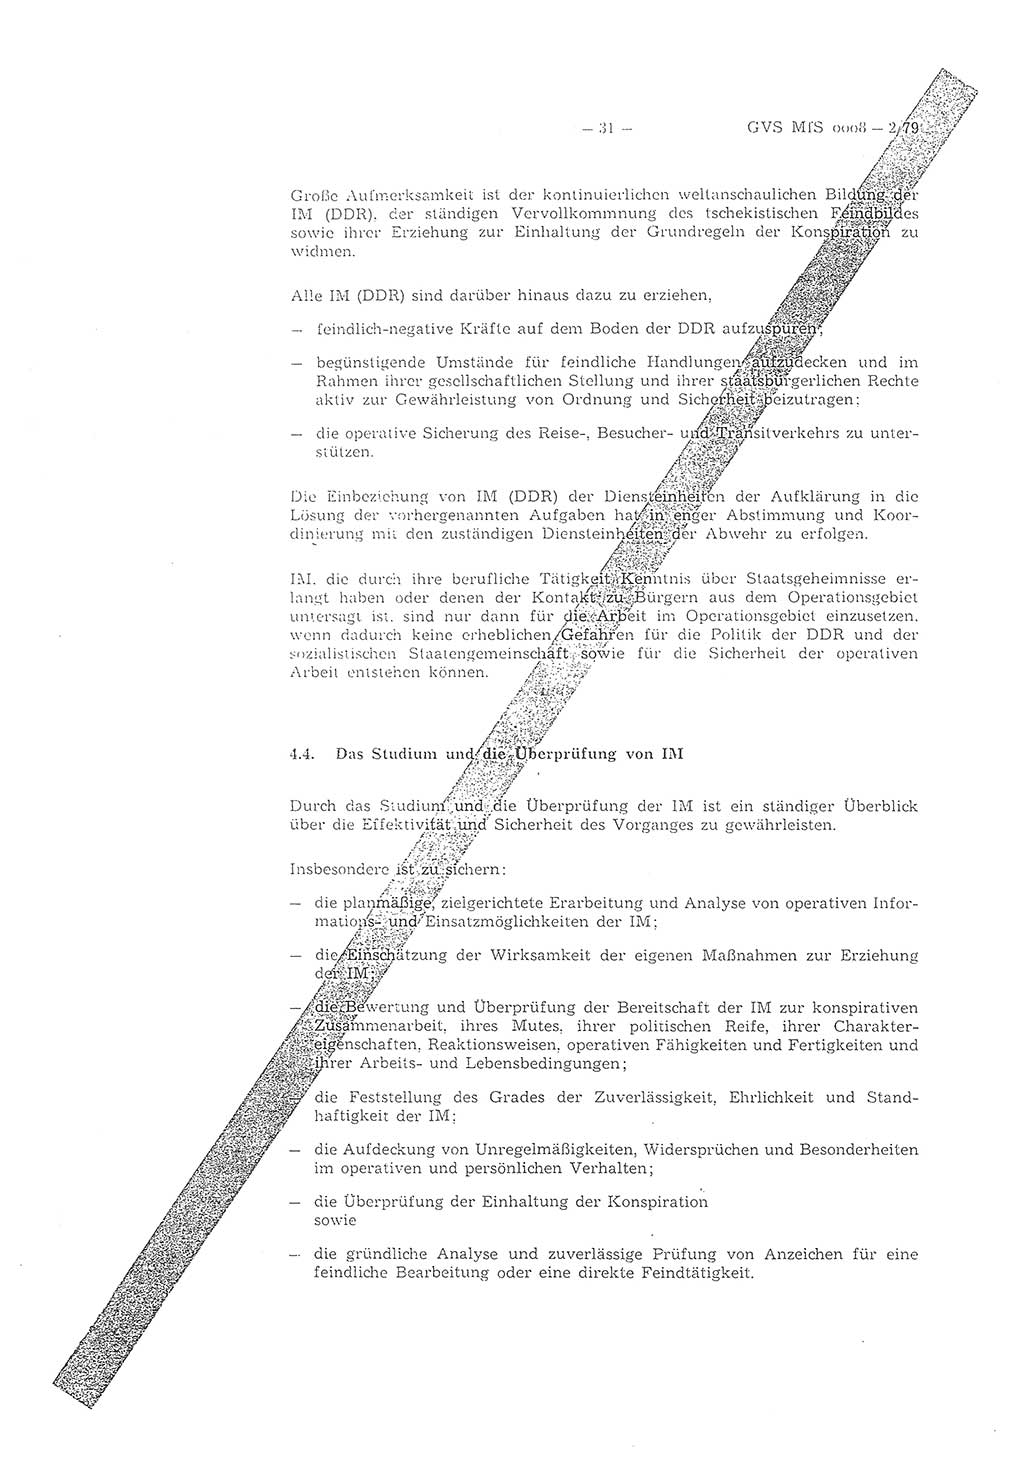 Richtlinie 2/79 für die Arbeit mit Inoffiziellen Mitarbeitern (IM) im Operationsgebiet, Deutsche Demokratische Republik (DDR), Ministerium für Staatssicherheit (MfS), Der Minister (Mielke), Geheime Verschlußsache (GVS) ooo8-2/79, Berlin 1979, Seite 31 (RL 2/79 DDR MfS Min. GVS ooo8-2/79 1979, S. 31)